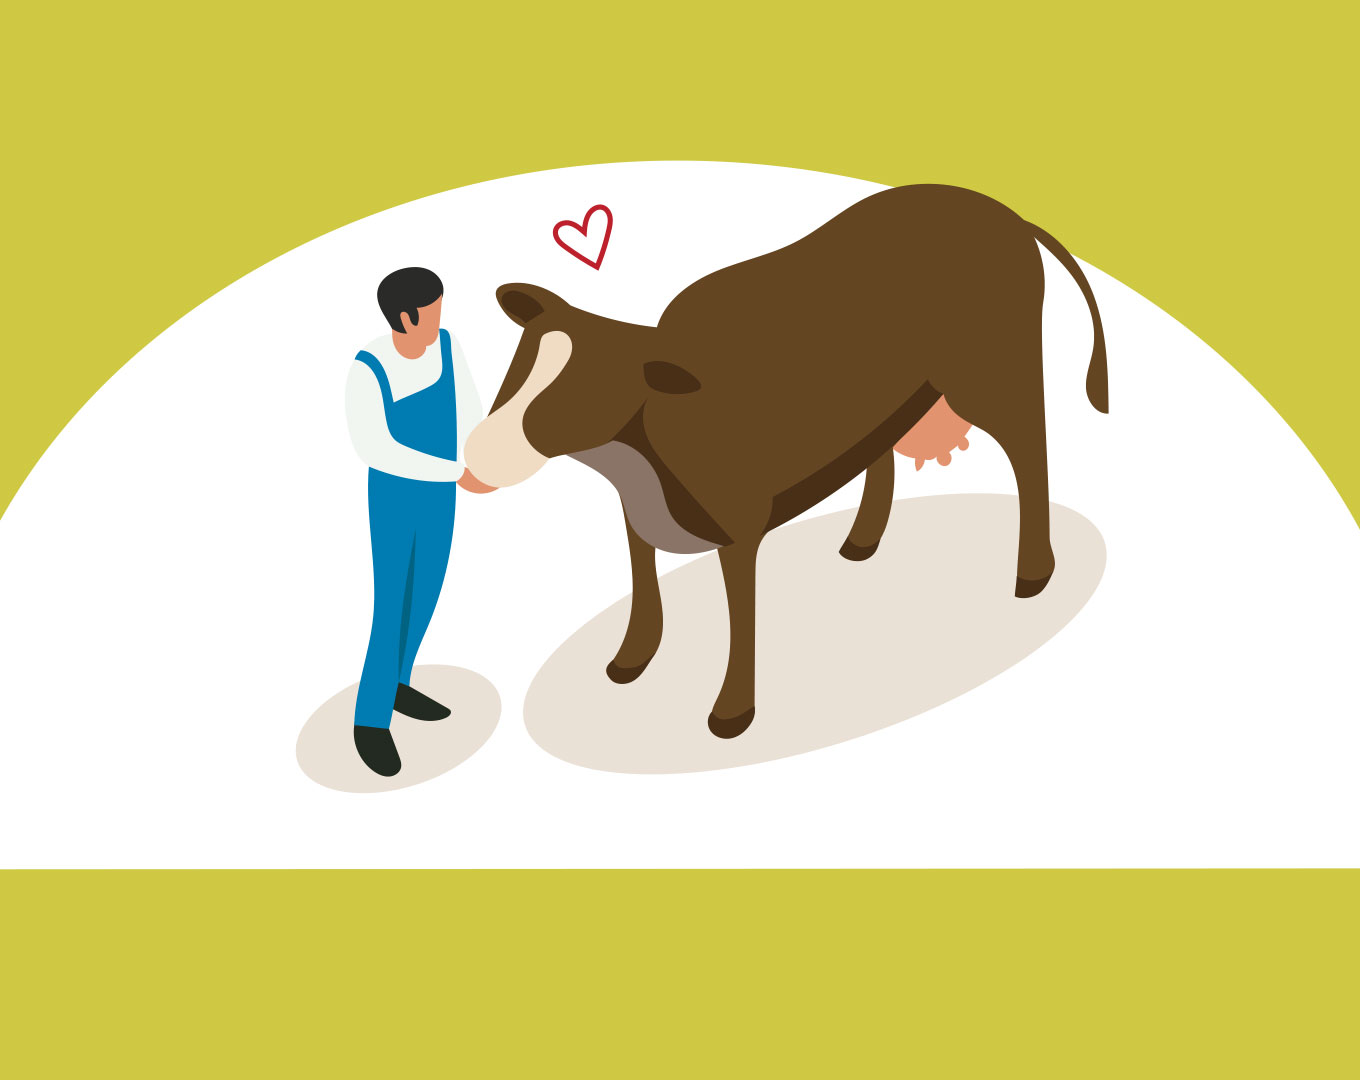 Graphisme eleveur de bovin dans le respect du bien-etre animal